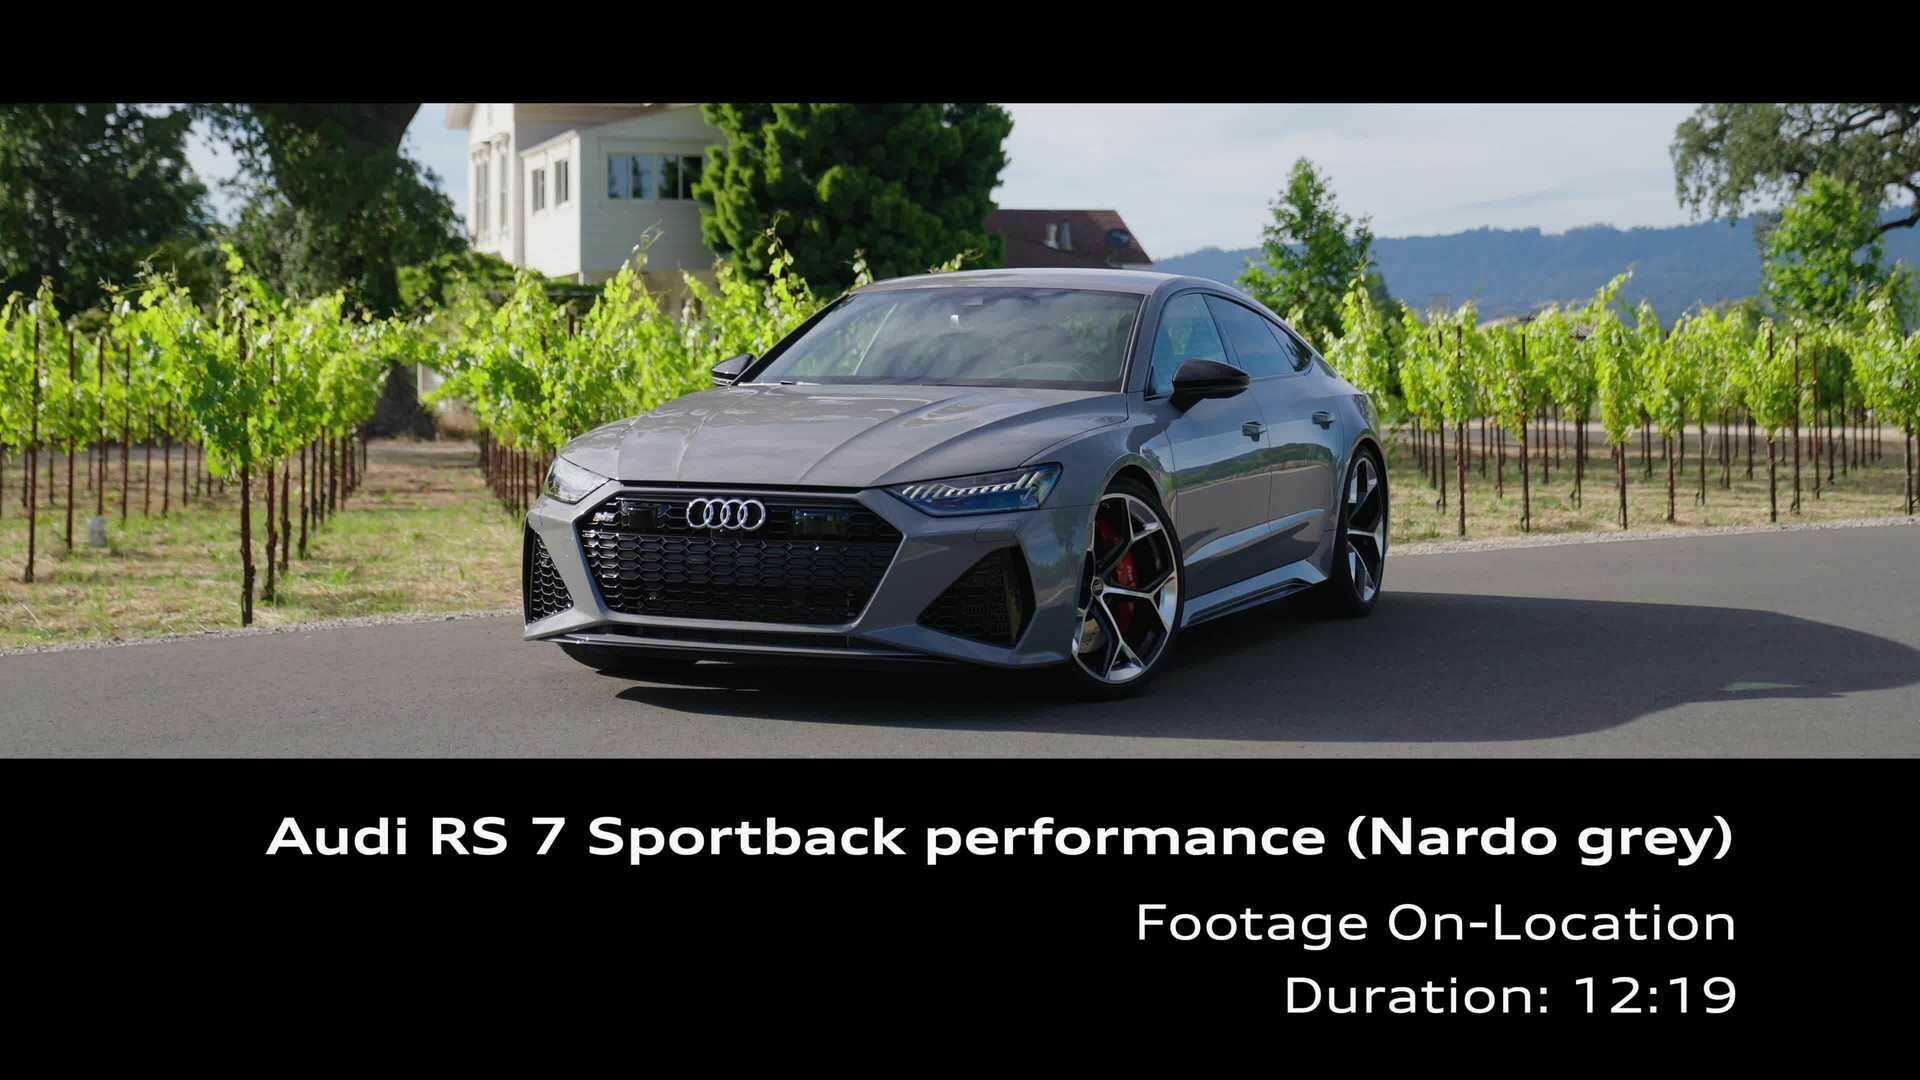 Footage: Audi RS 7 Sportback performance Nardograu